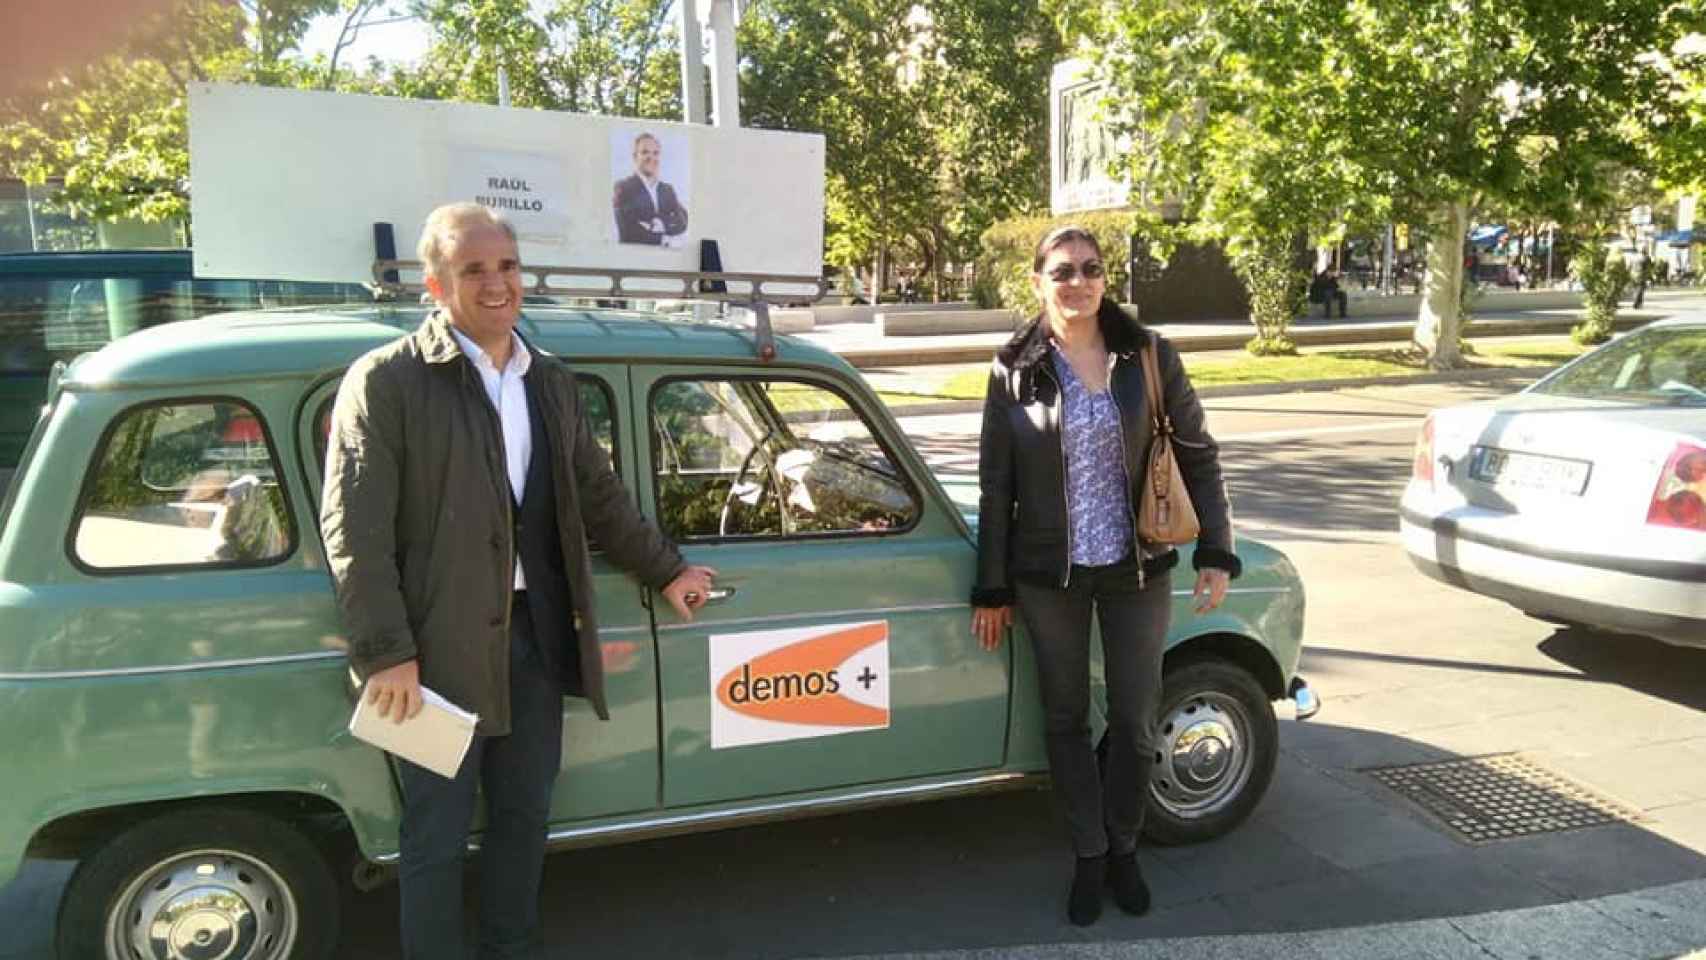 Raúl Burillo y la profesora de Geografía Lourdes Serrano,  candidatos de Demos+ por Zaragoza en 2019